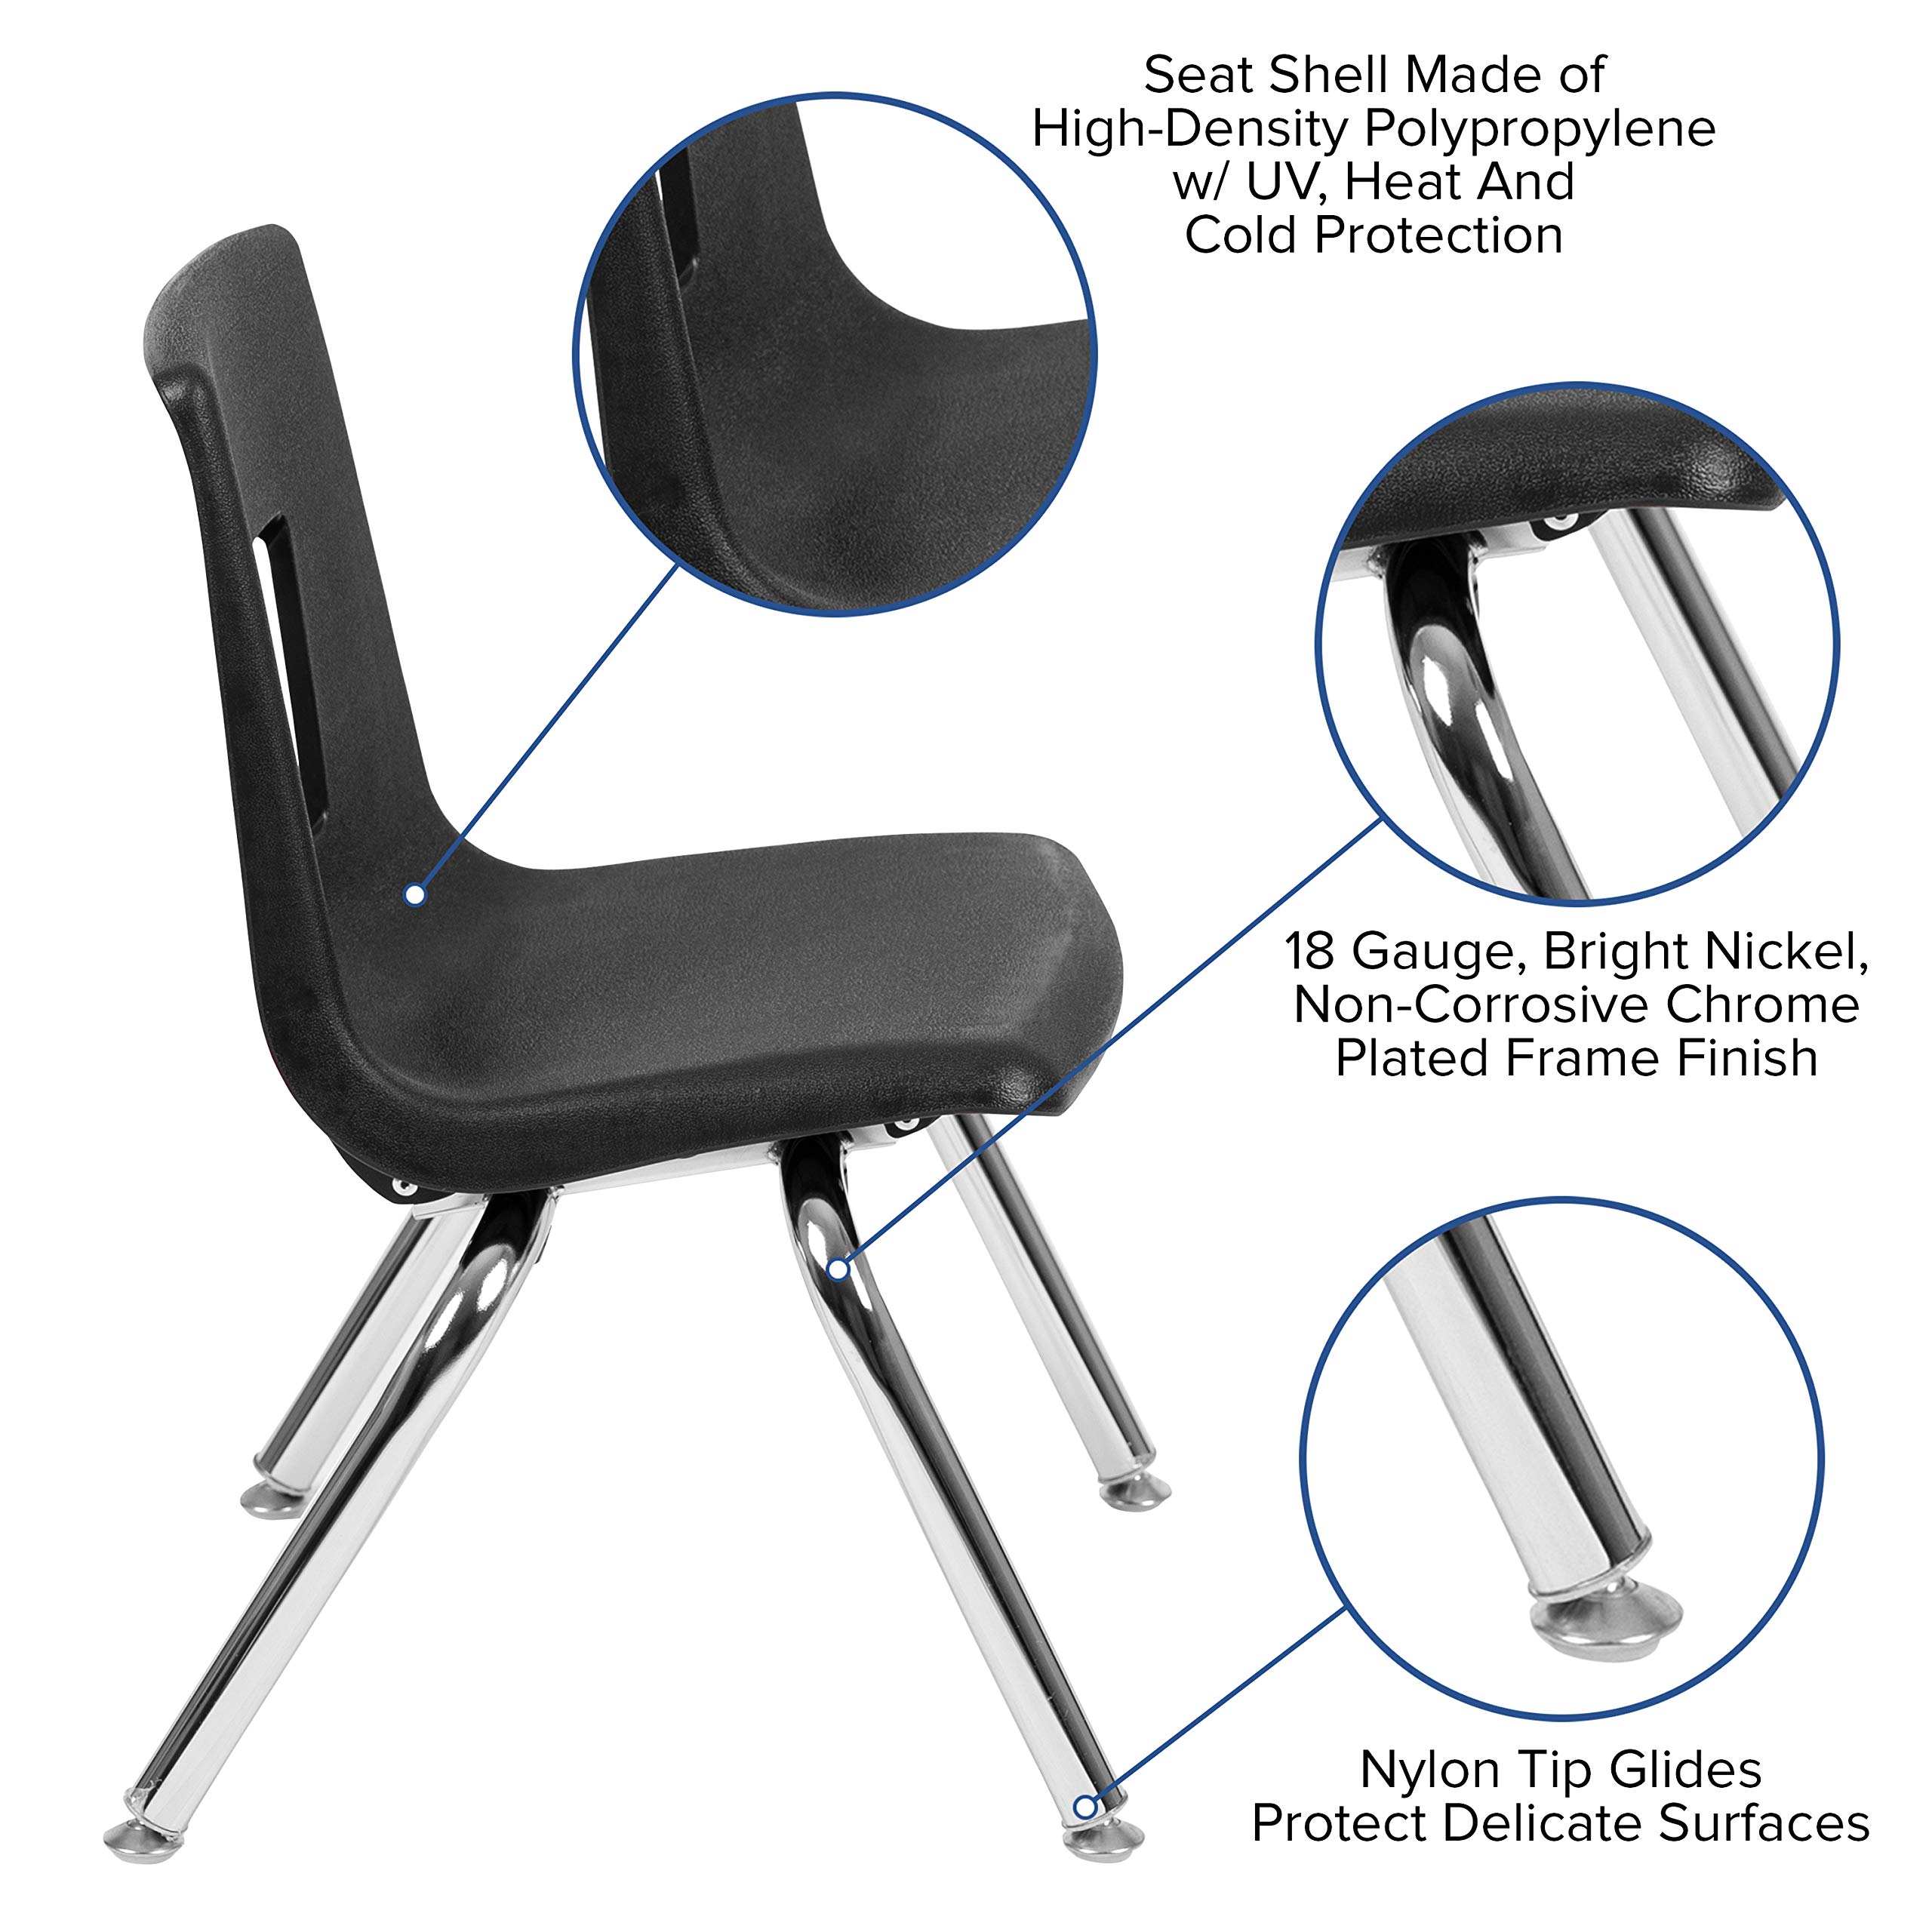 BizChair Black Student Stack School Chair - 12-inch